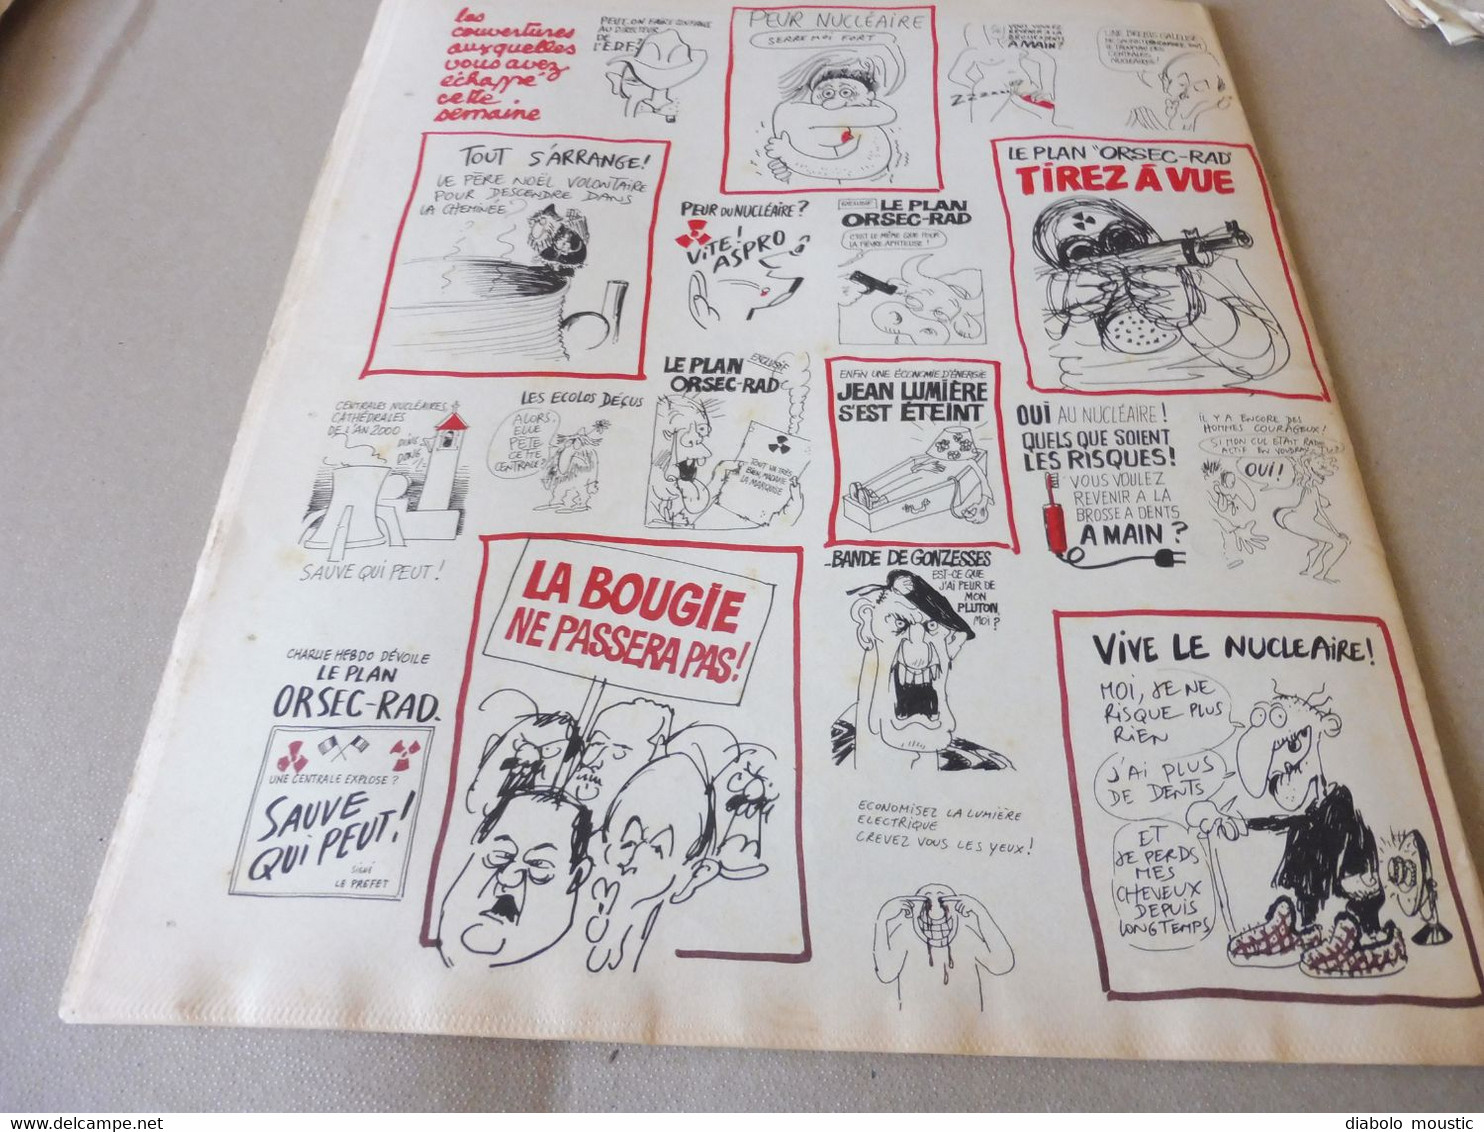 1978  OUI AU NUCLEAIRE  ...........Etc  (Charlie Hebdo)